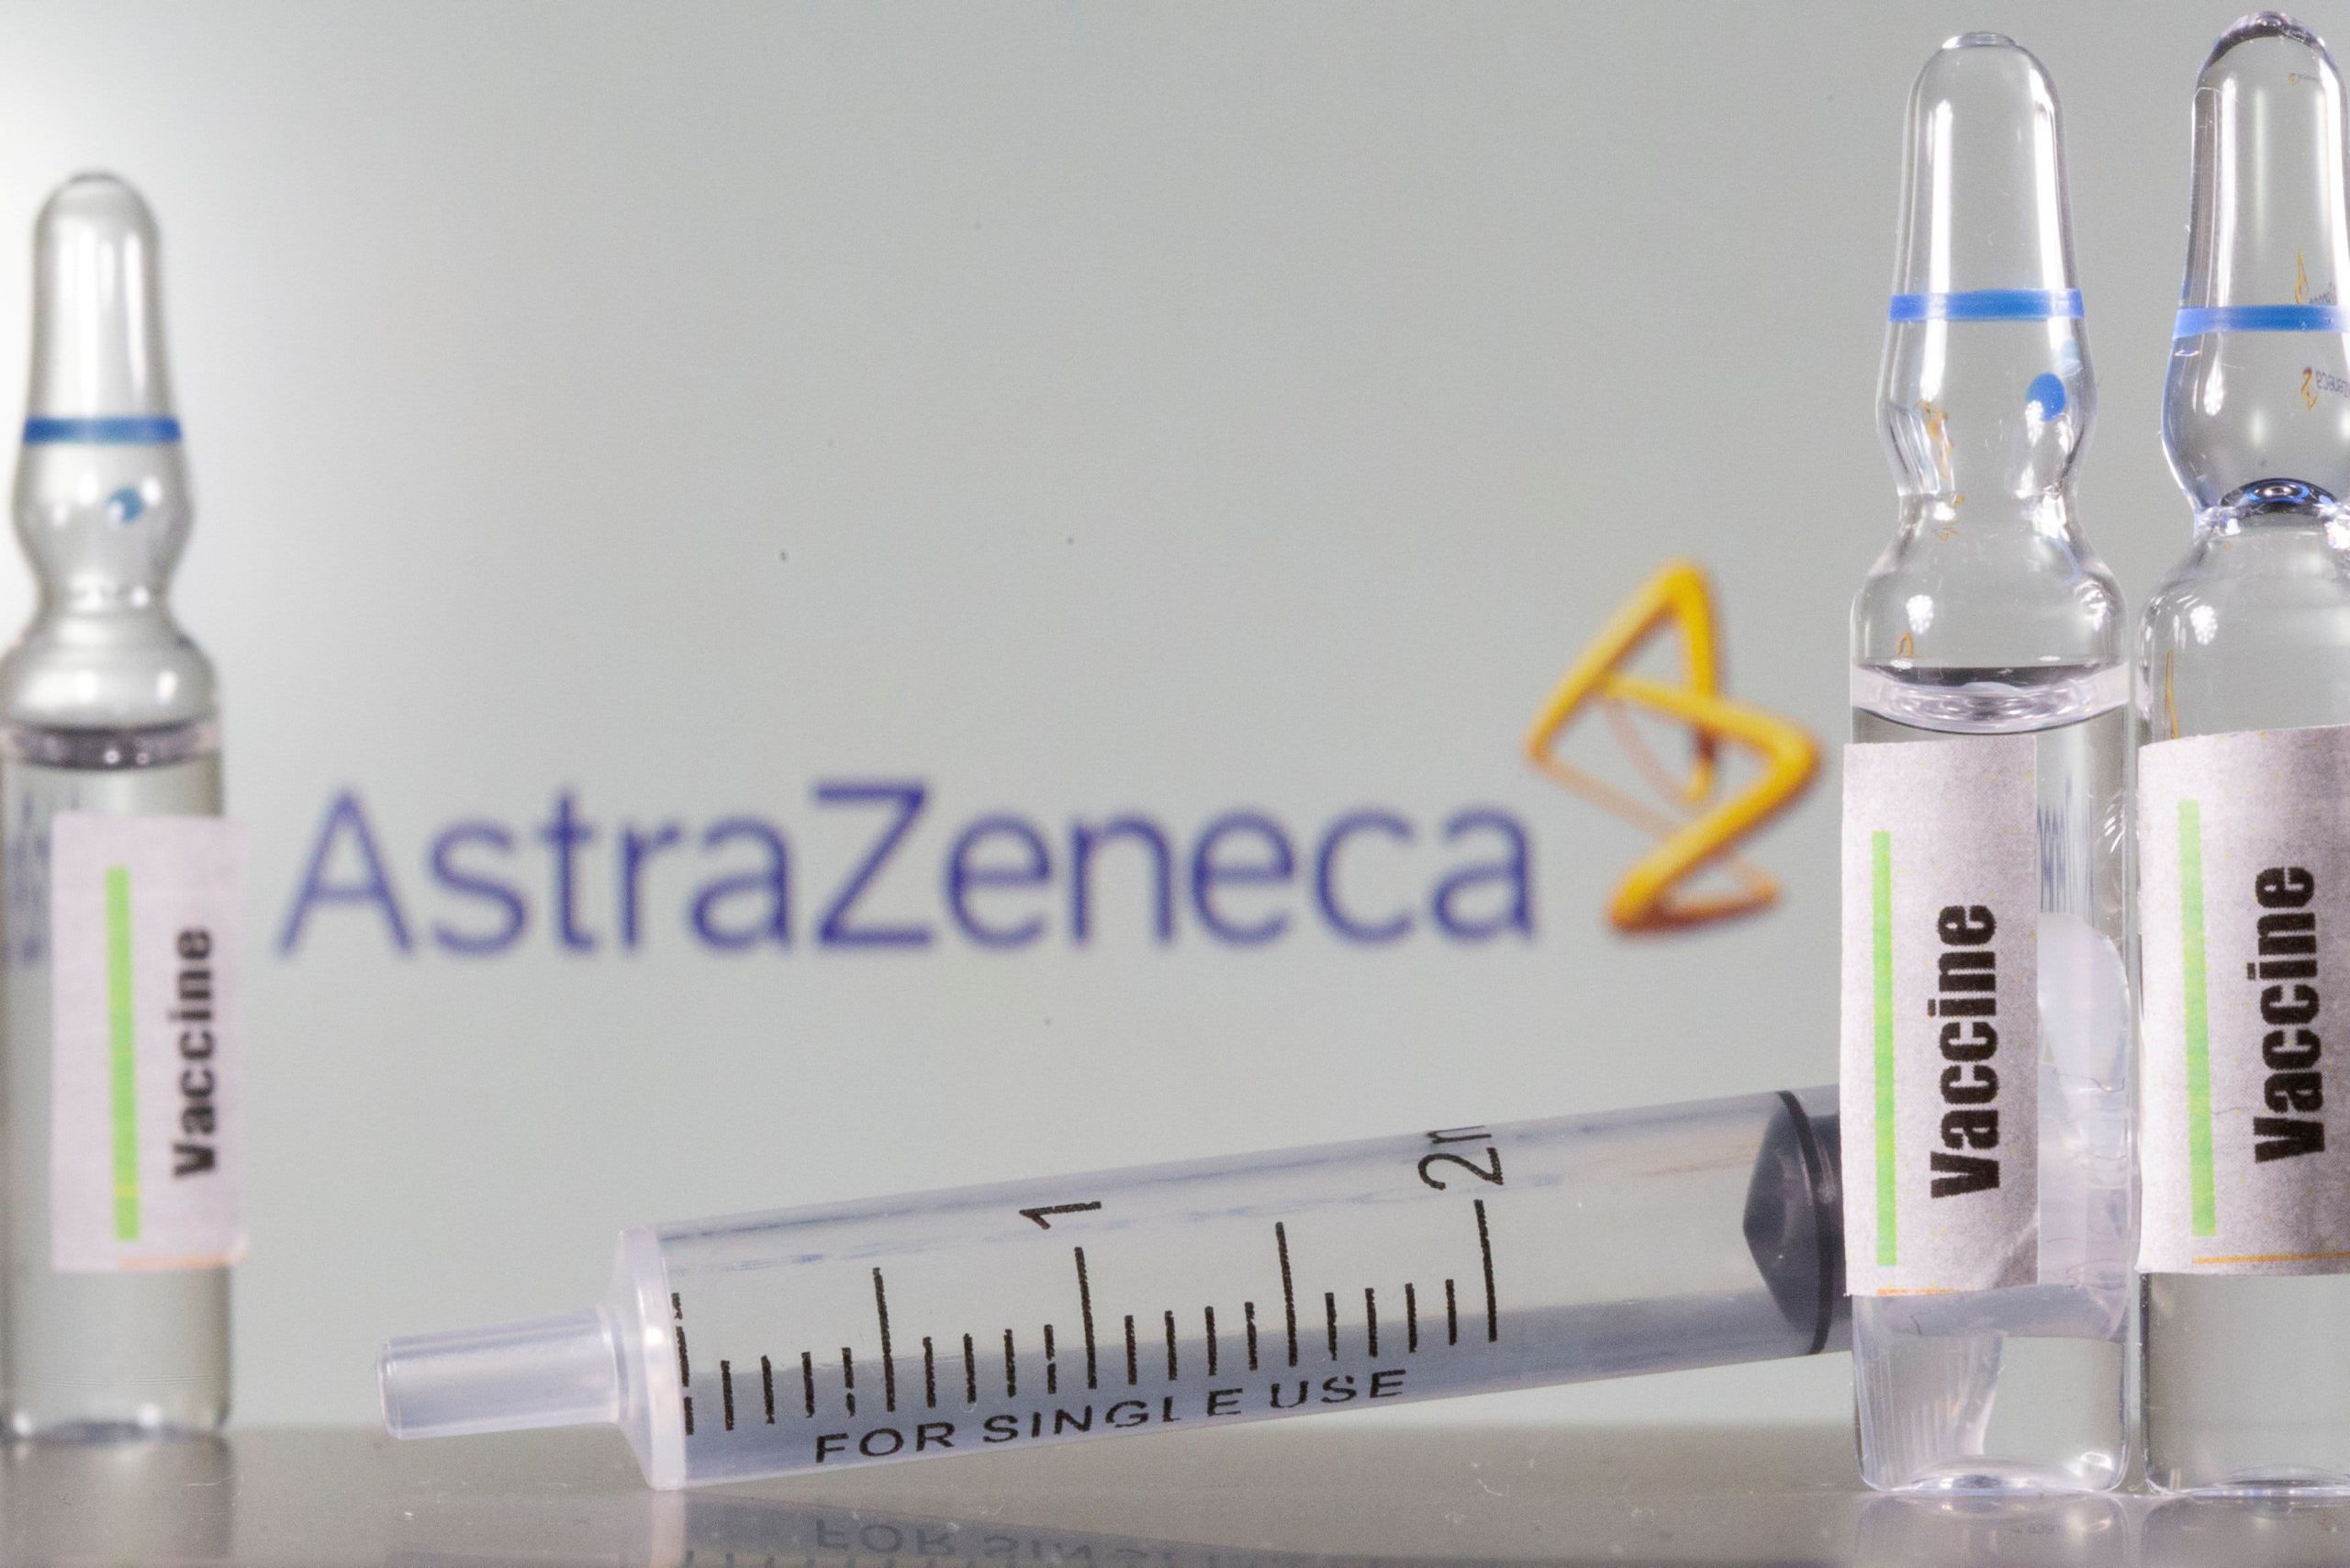 Oxford-AstraZeneca Covid vaccine exhibits a mean effectiveness of 70%